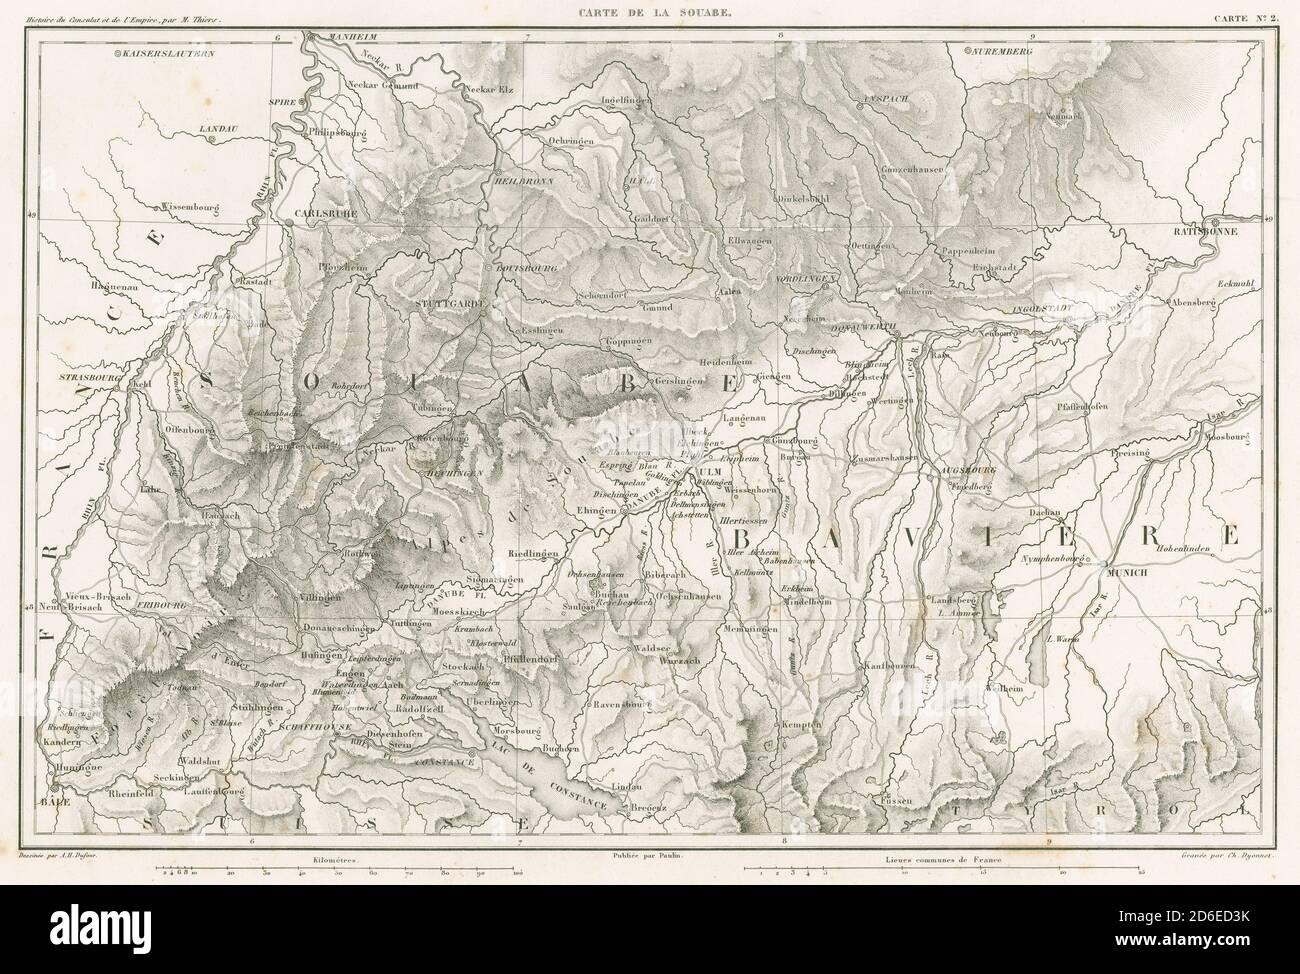 Mapa francés grabado 1859 antiguo, carta de la Souabe. El Souabe (en alemán: Schwaben) es una región histórica en el suroeste de Alemania. FUENTE: GRABADO ORIGINAL Foto de stock